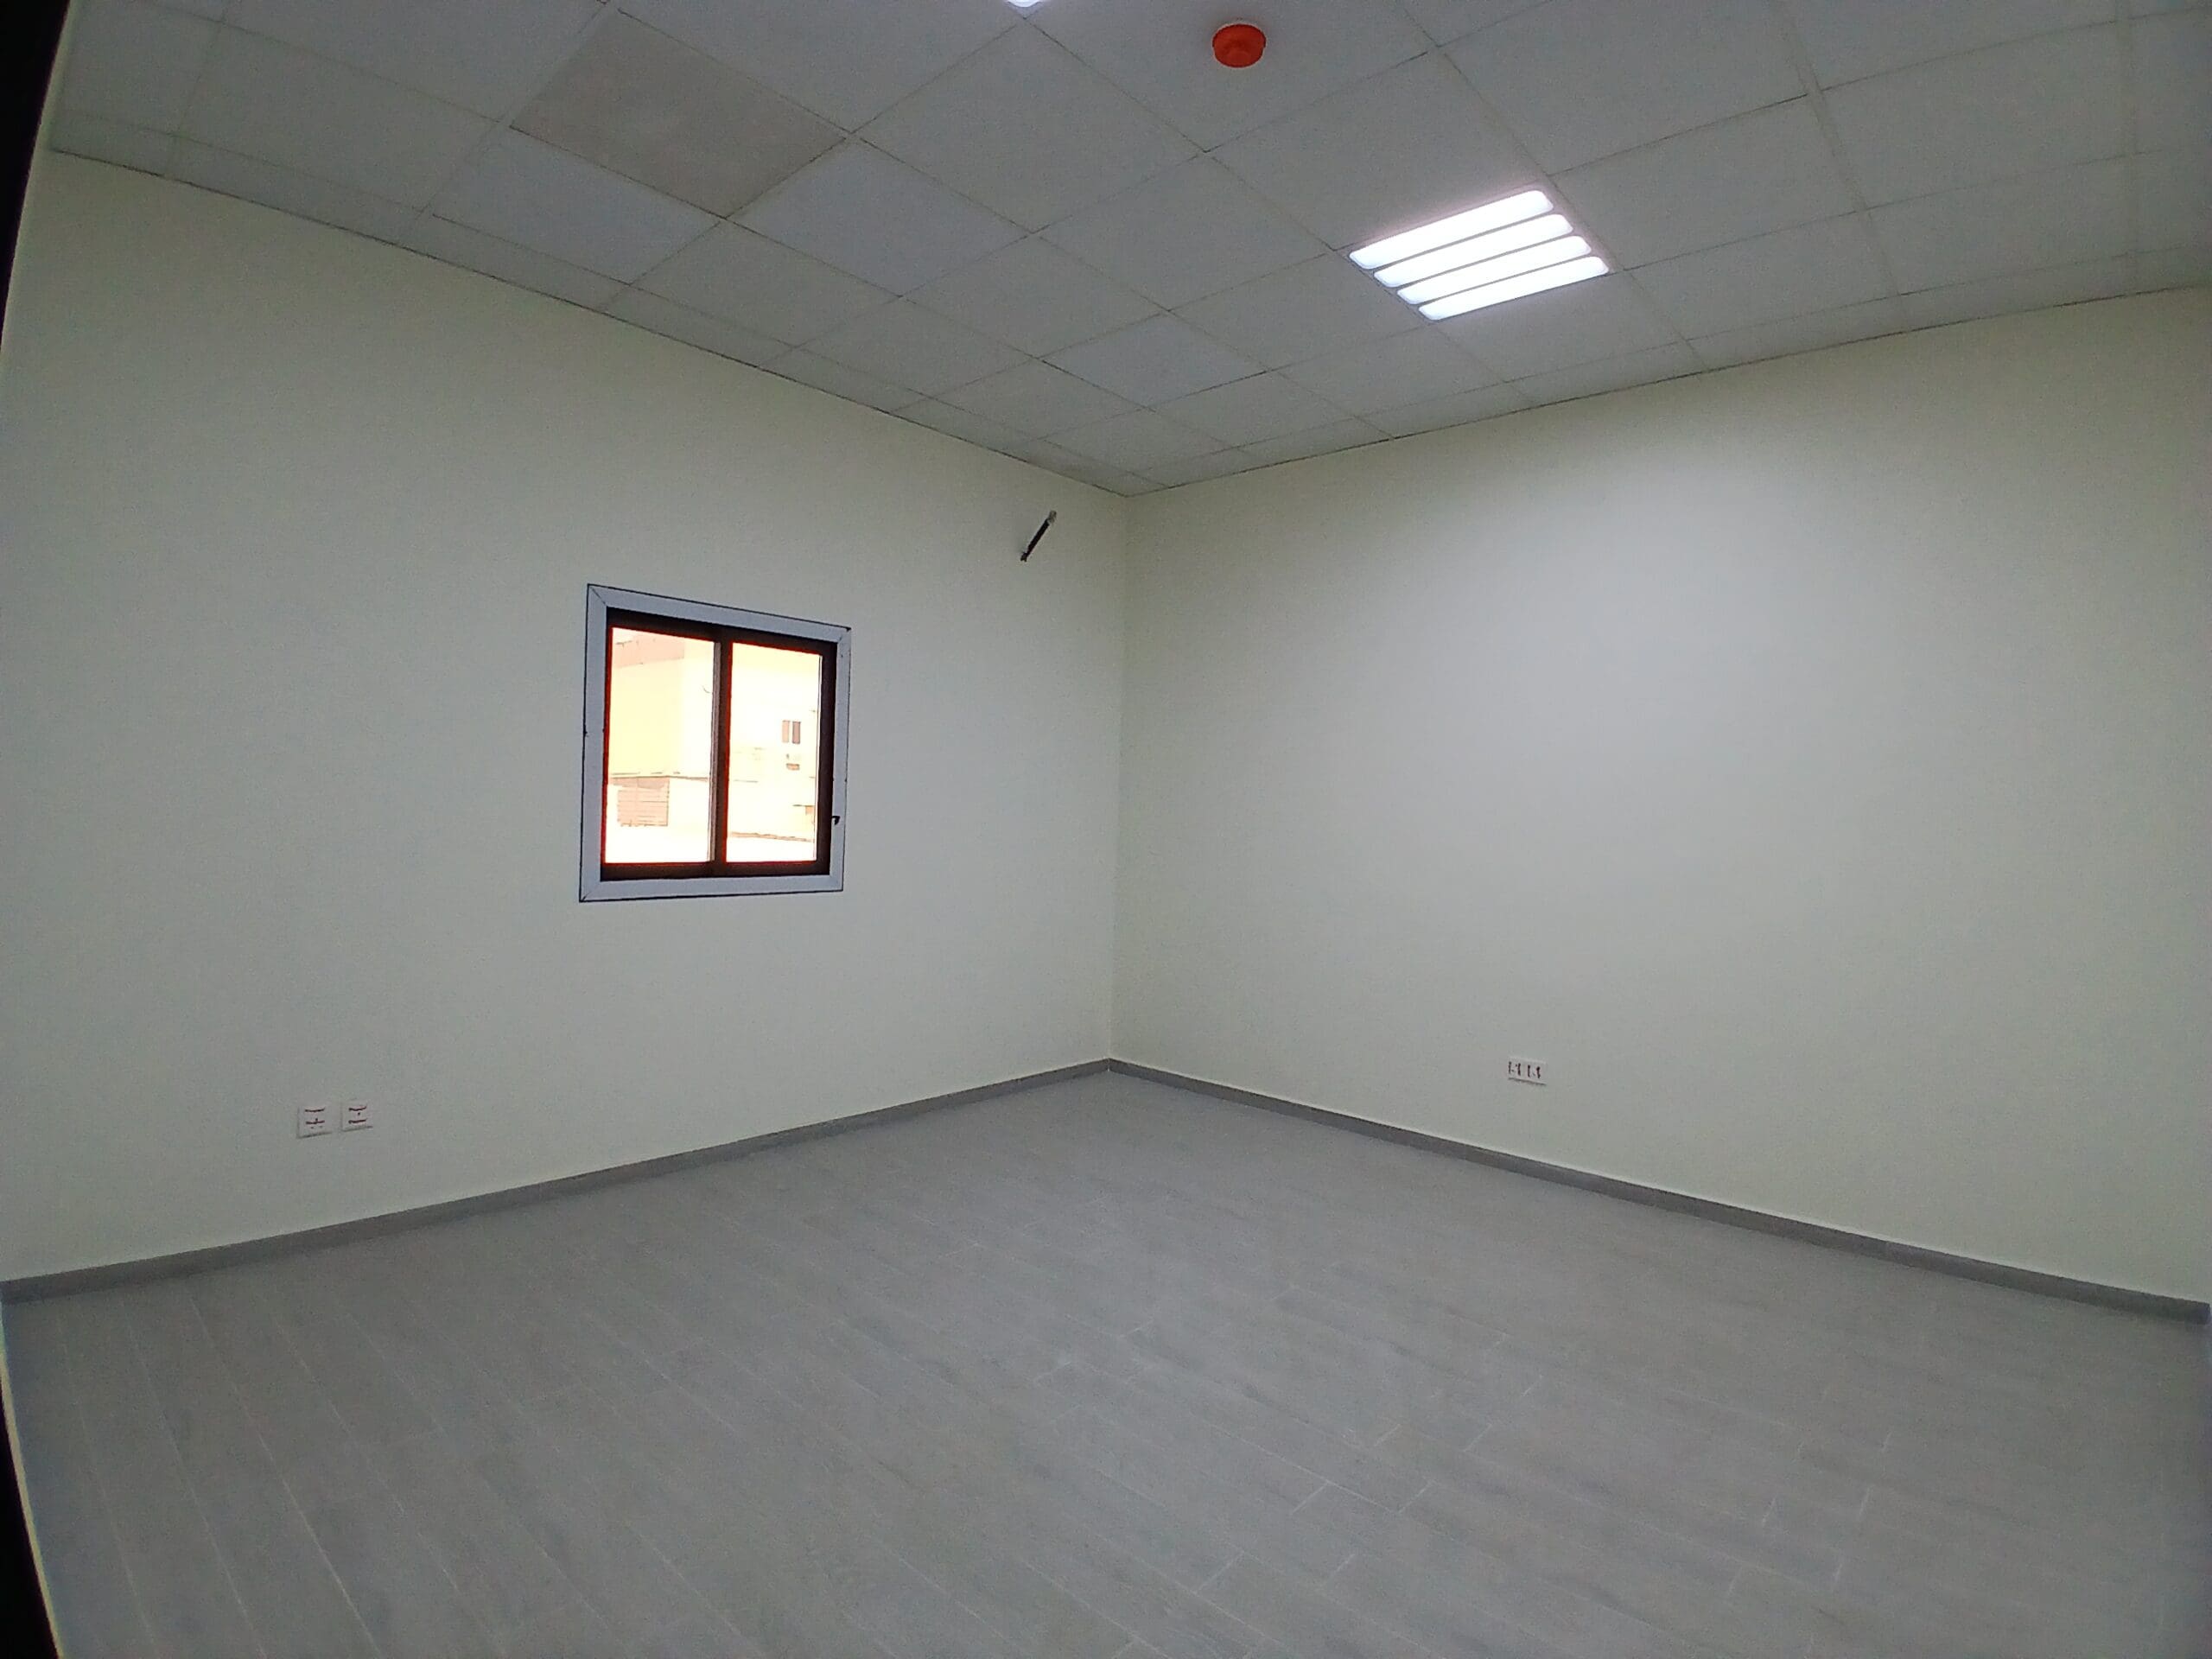 غرفة فارغة ذات جدران بيضاء، ونافذة واحدة، وأرضية من البلاط الرمادي.